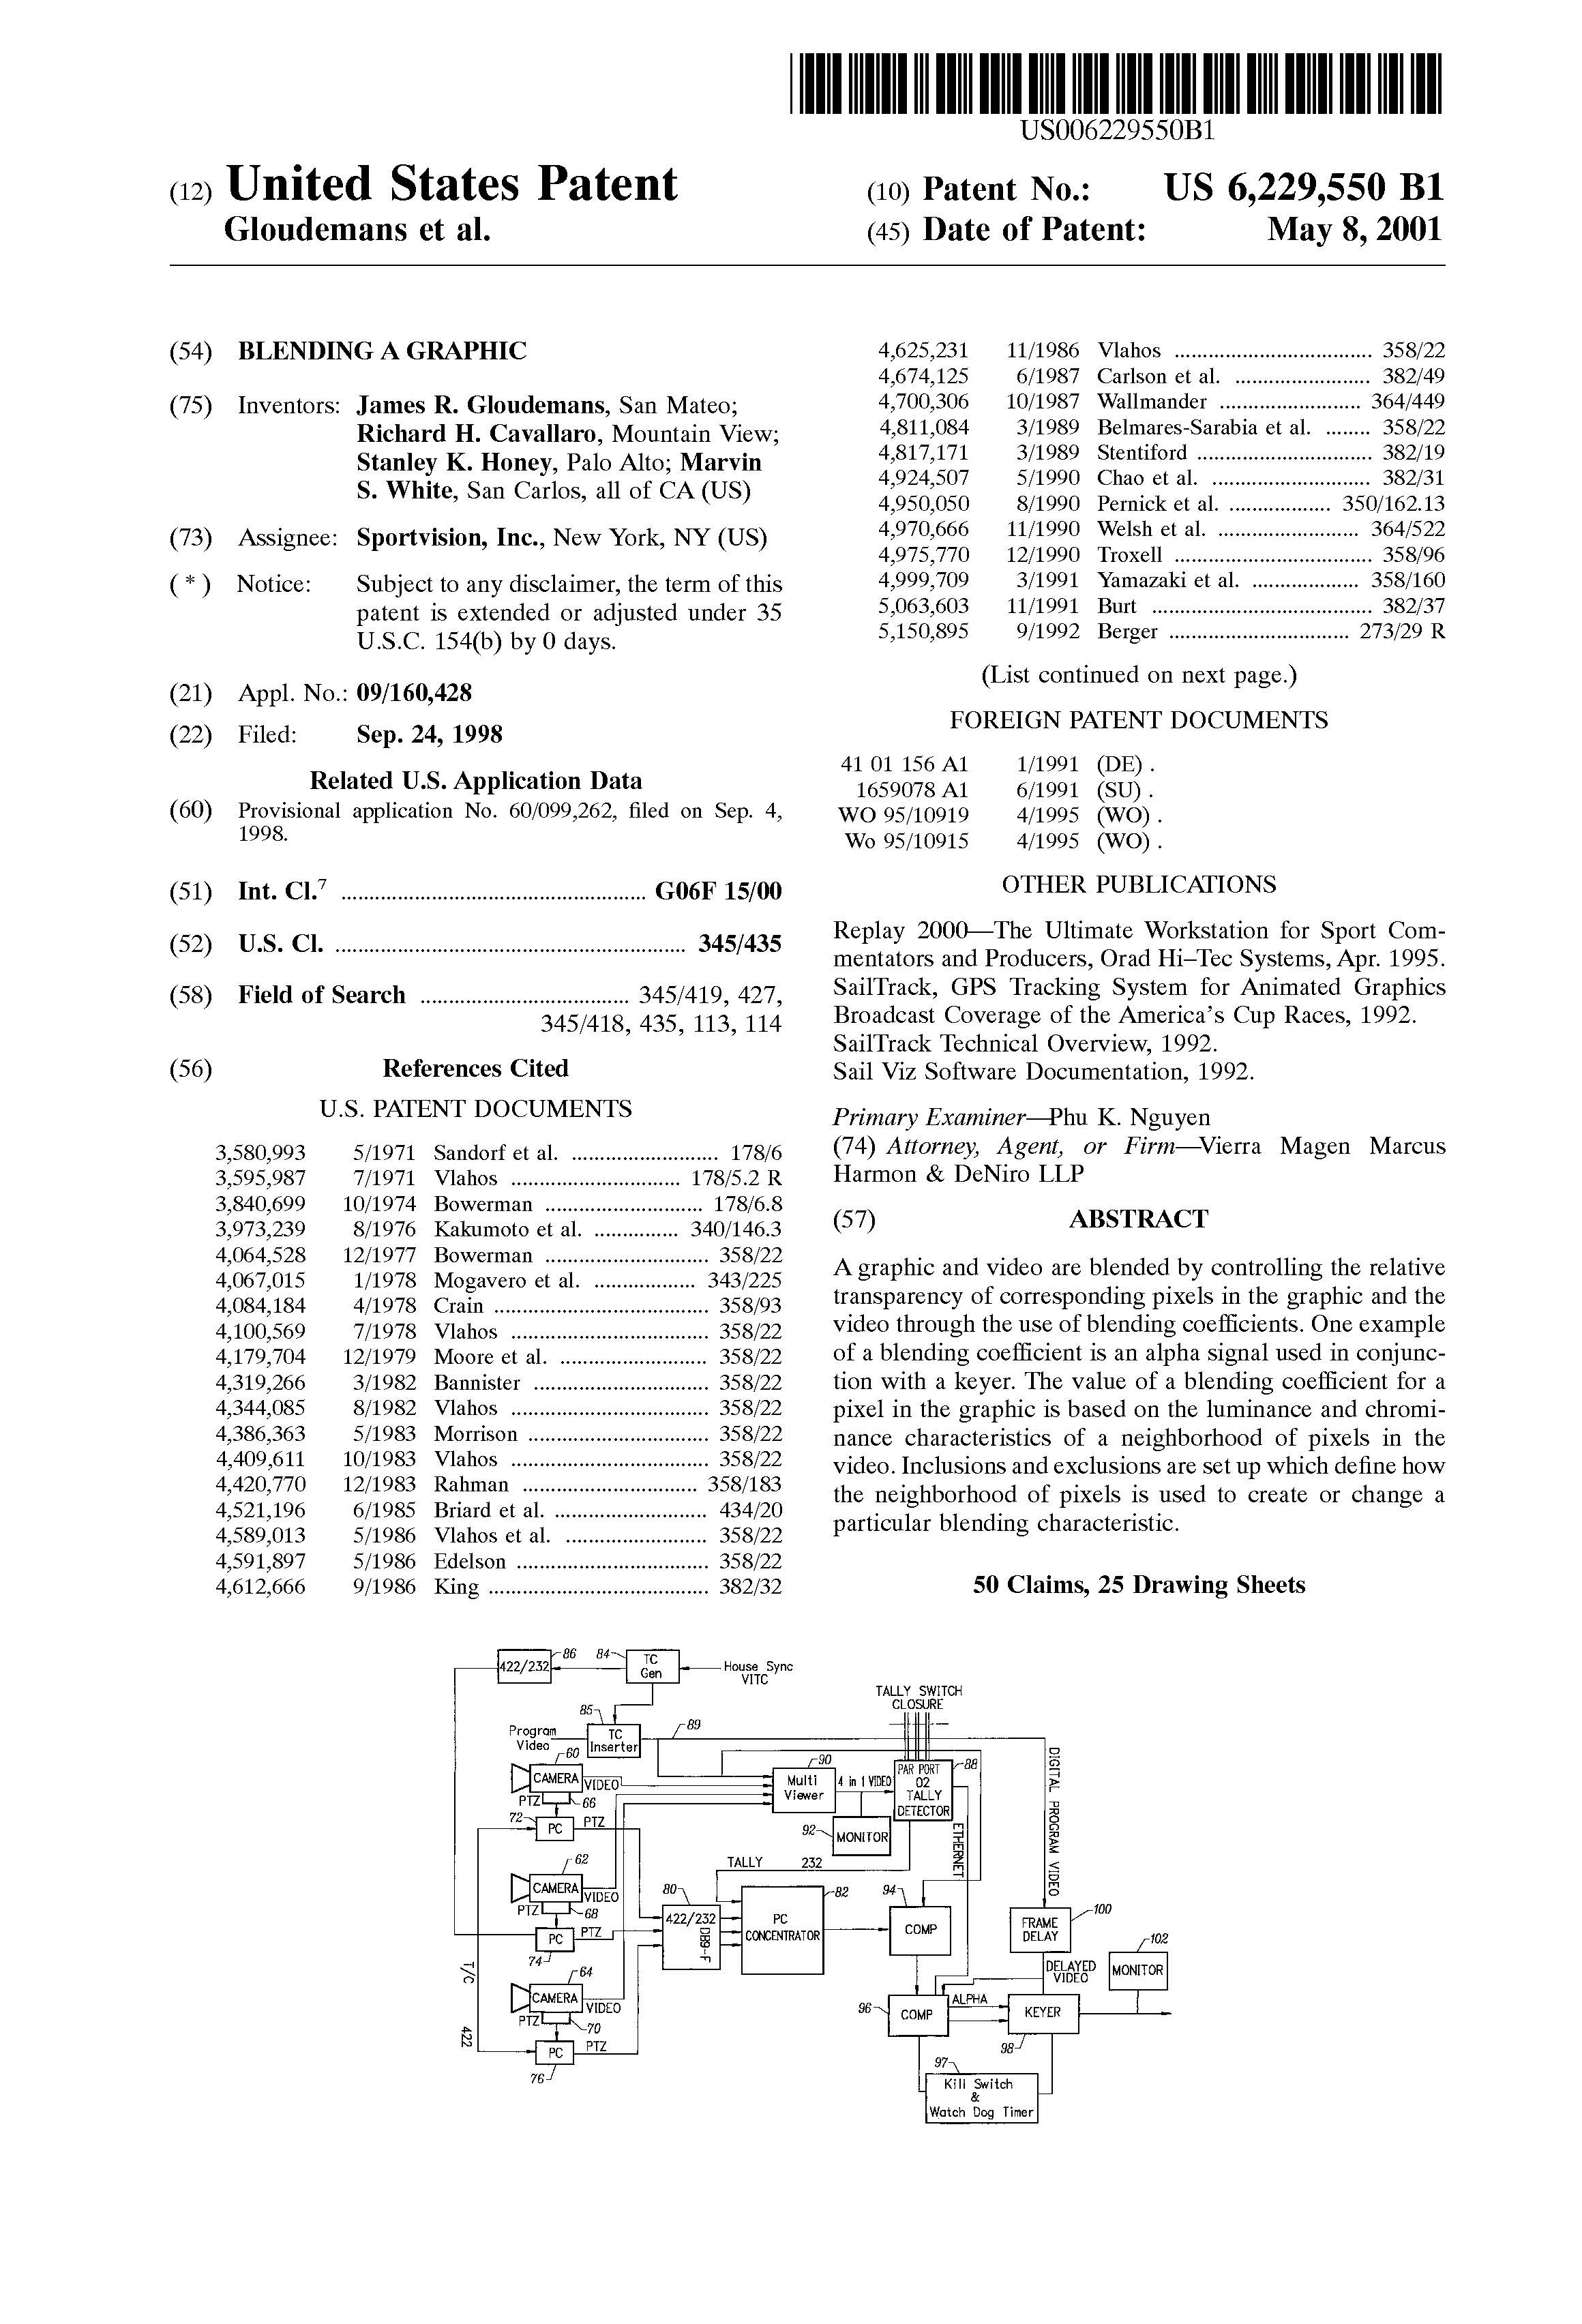 U.S Patent No. 6,229,550